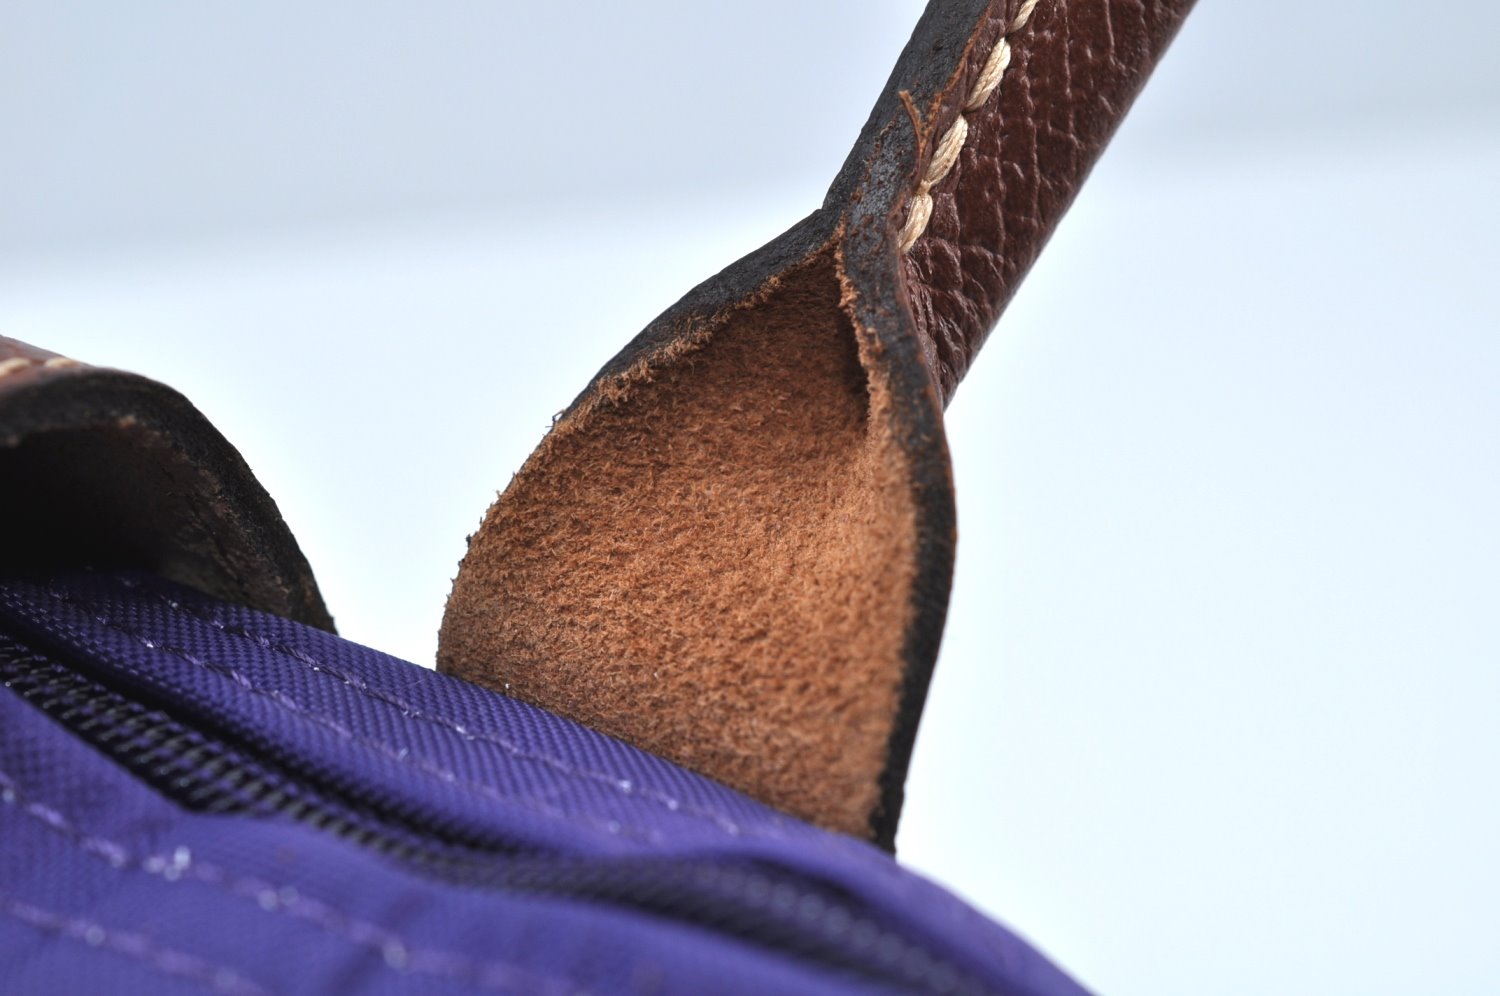 Auth Longchamp Le Pliage Shopper Tote Hand Bag Nylon Leather Purple K9616